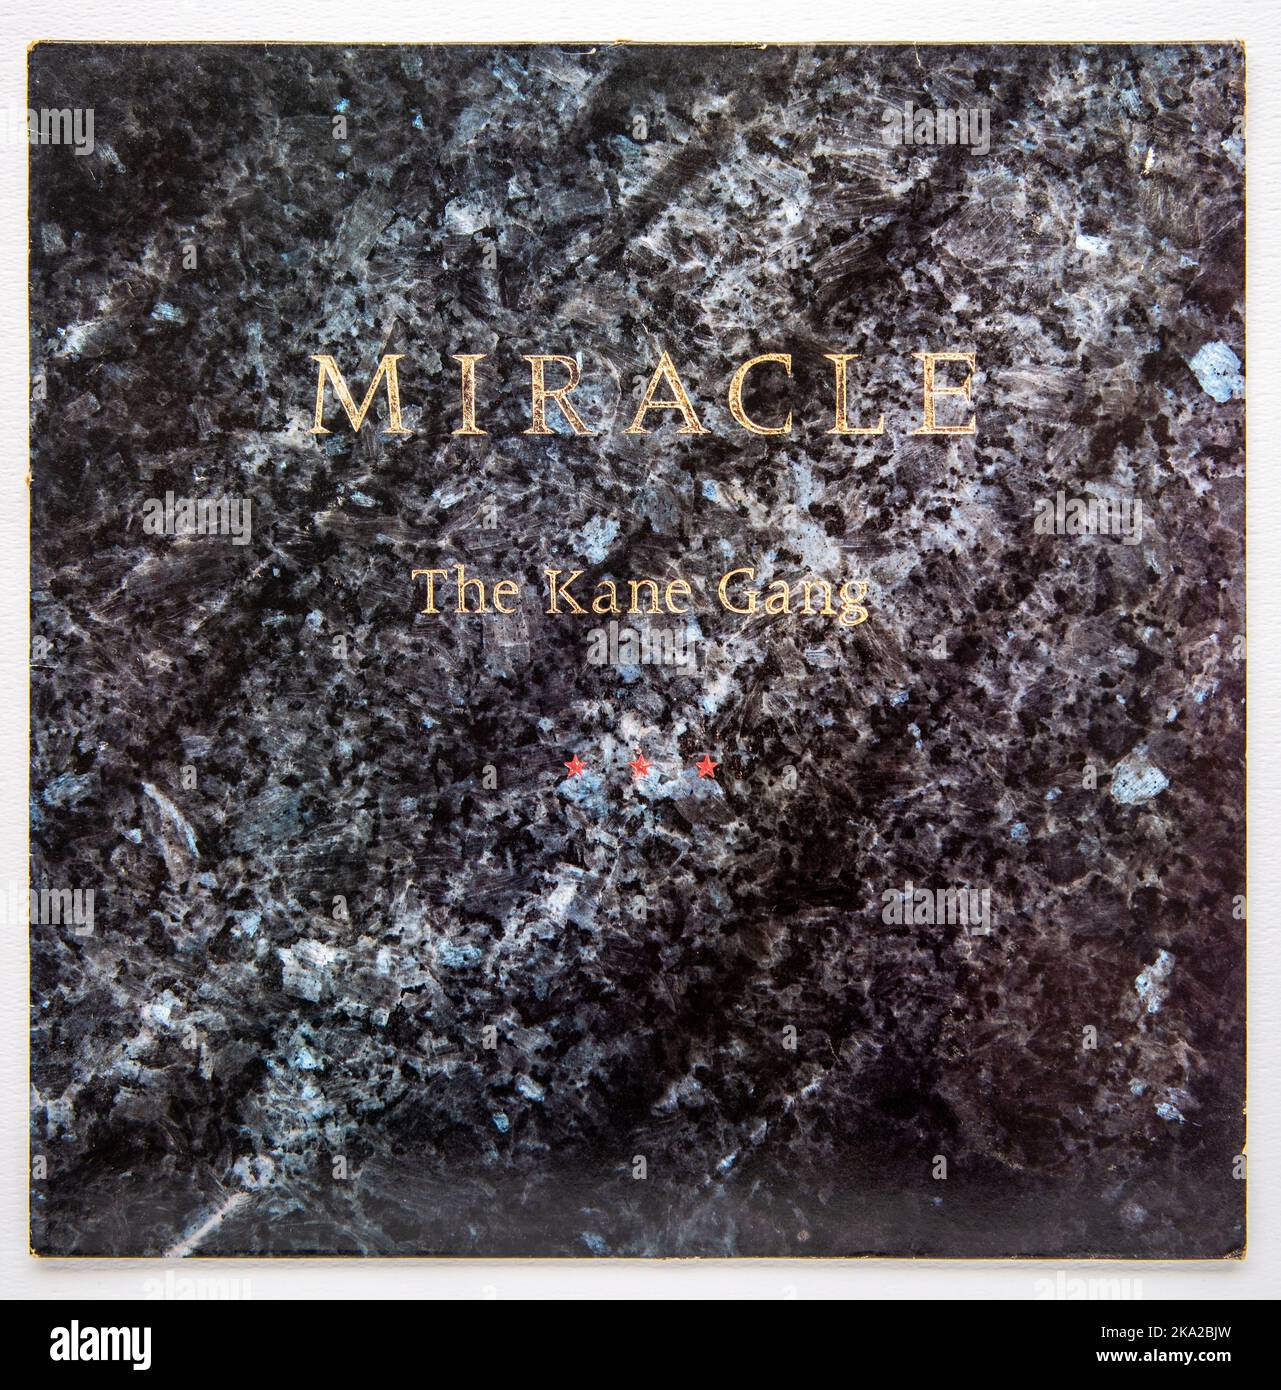 Copertina LP di Miracle, il secondo album in studio dei Kane Gang, pubblicato nel 1987 Foto Stock